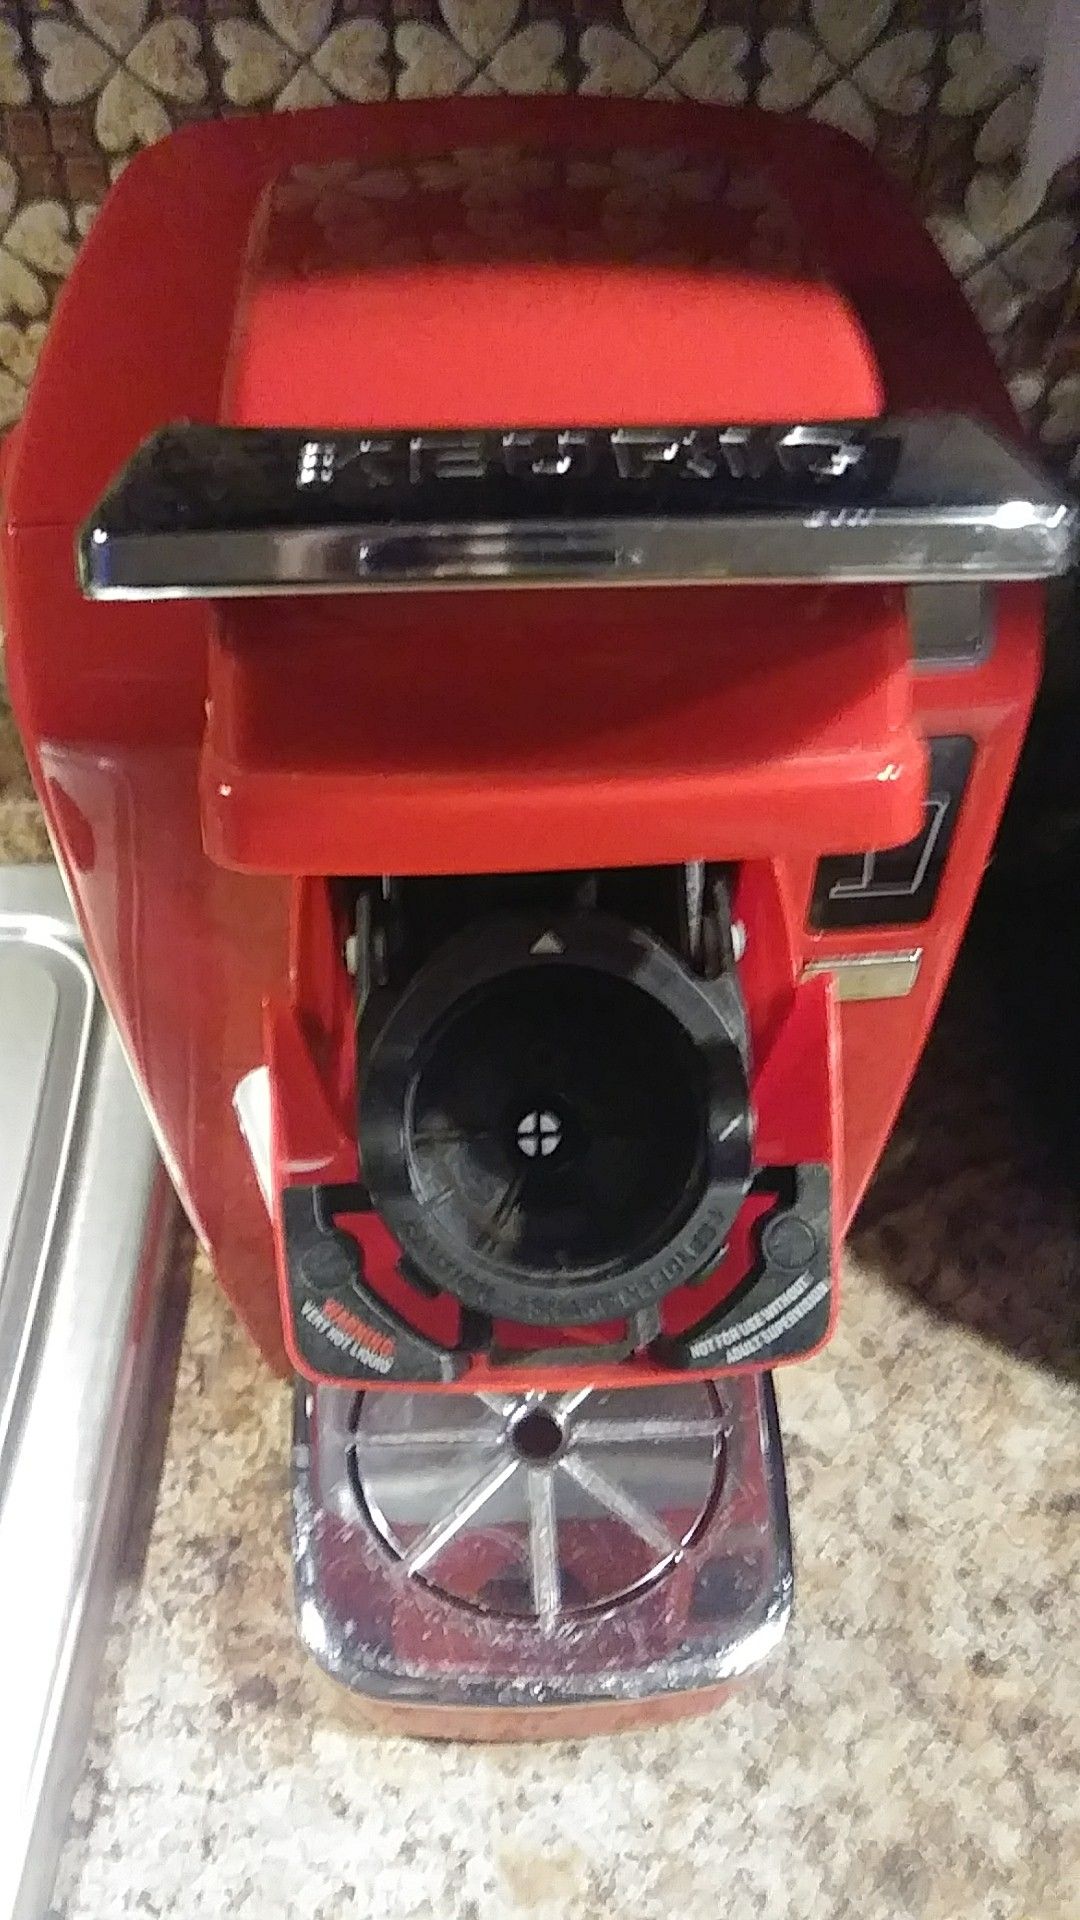 Keurig red coffee maker